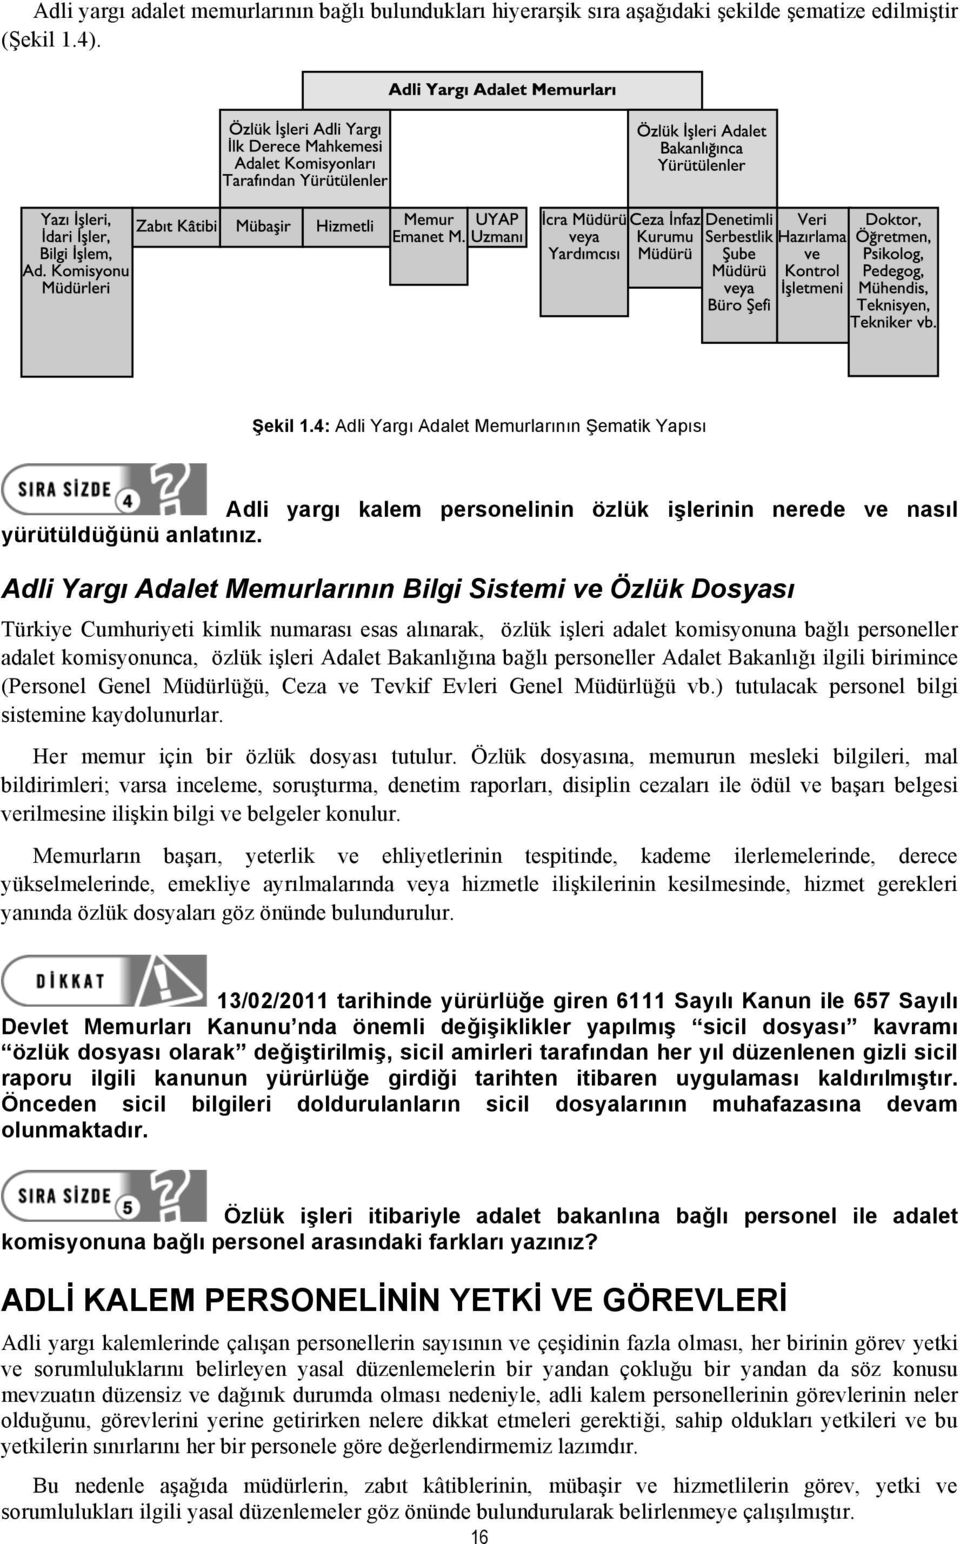 Adli Yargı Adalet Memurlarının Bilgi Sistemi ve Özlük Dosyası Türkiye Cumhuriyeti kimlik numarası esas alınarak, özlük işleri adalet komisyonuna bağlı personeller adalet komisyonunca, özlük işleri